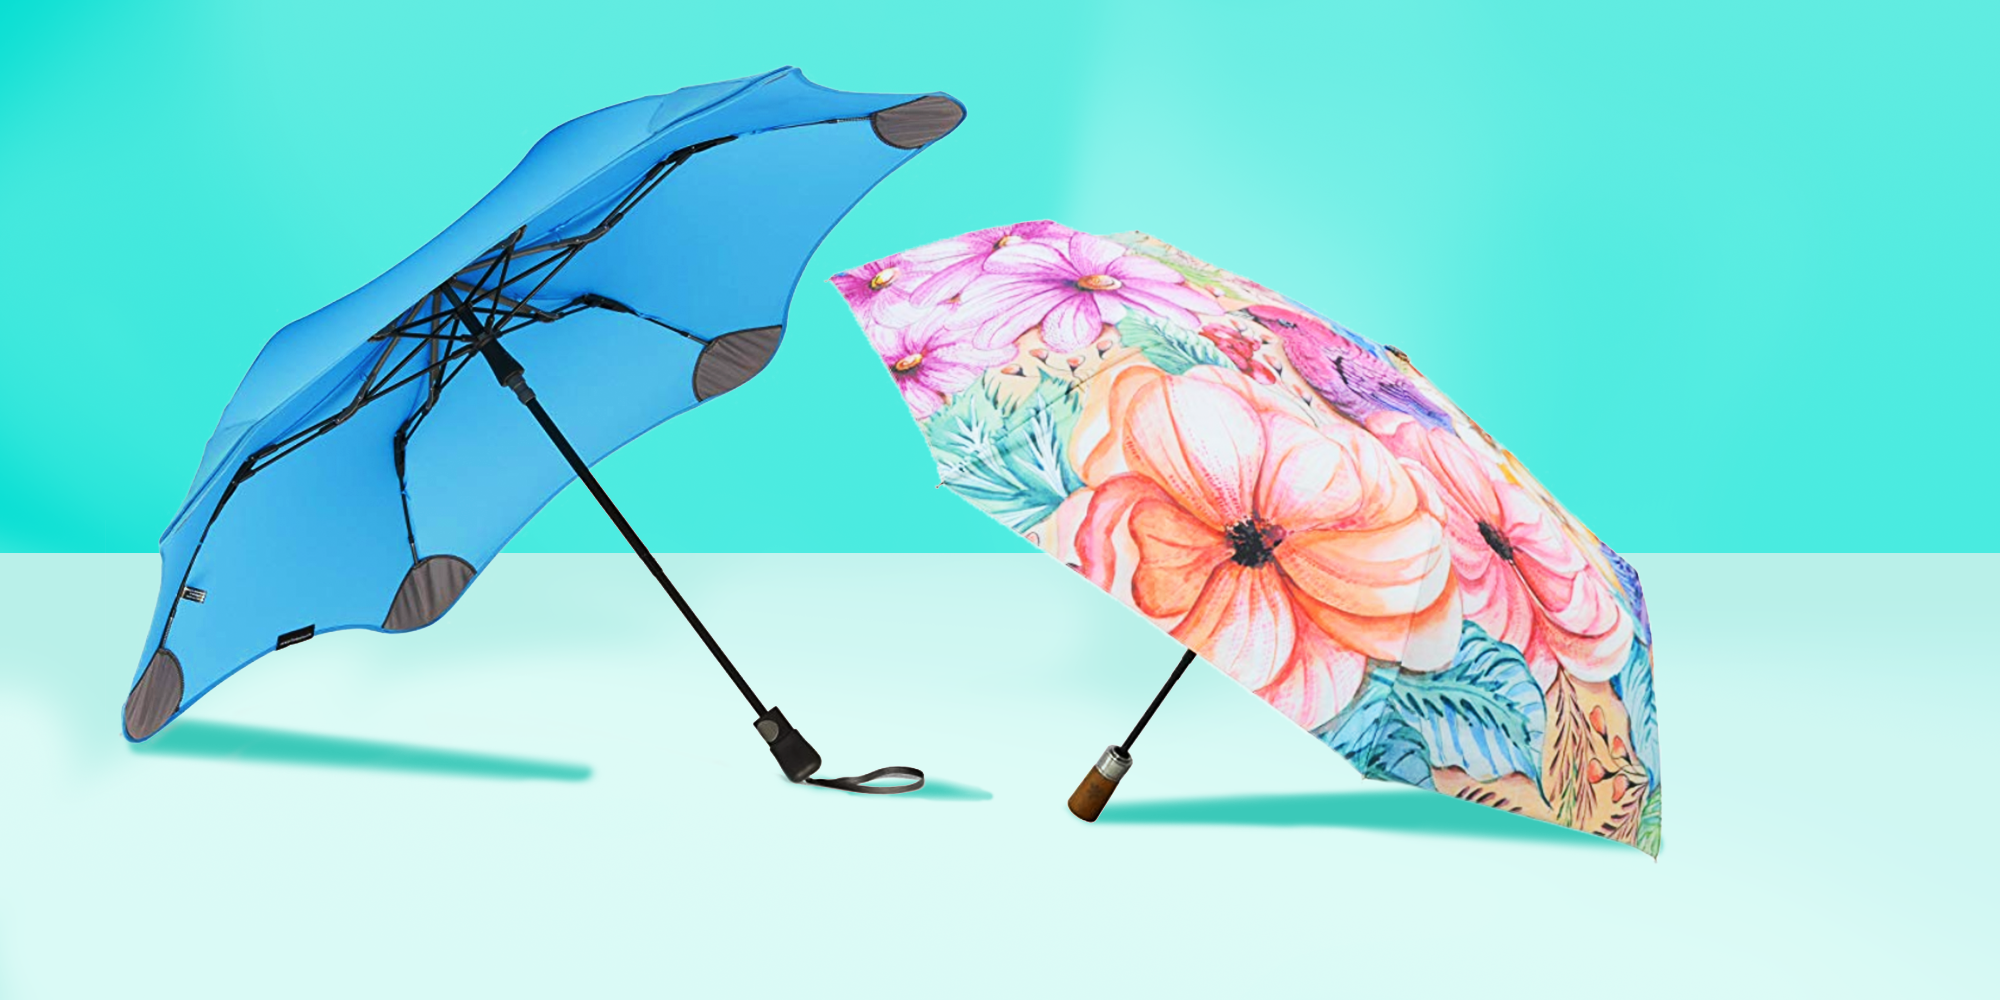 13 Best Umbrellas to Buy in 2020 - Top 